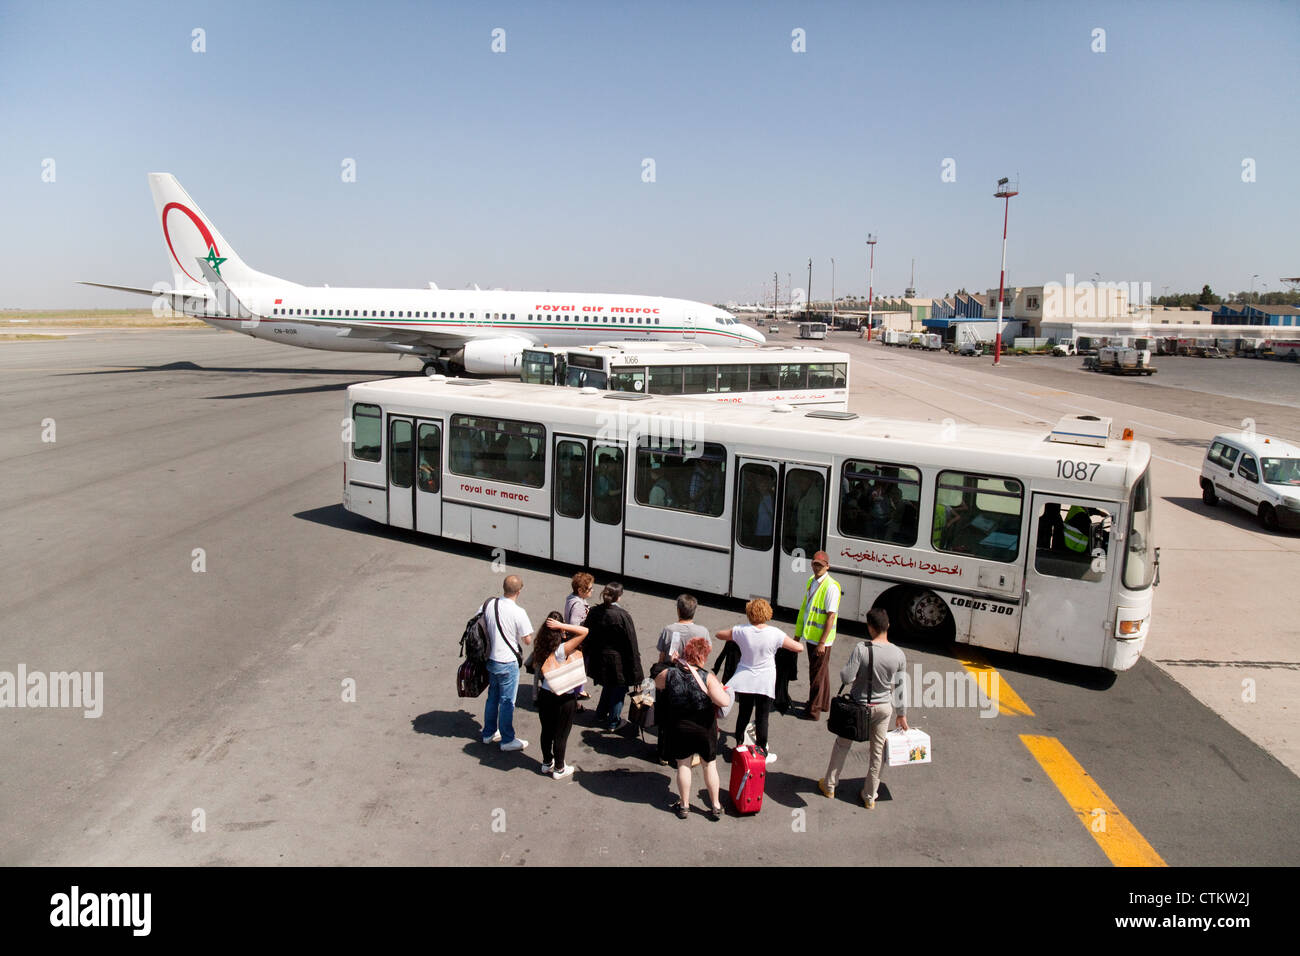 Royal Air Maroc-Flugzeug auf dem Boden am Flughafen von Casablanca, Marokko Afrika Stockfoto